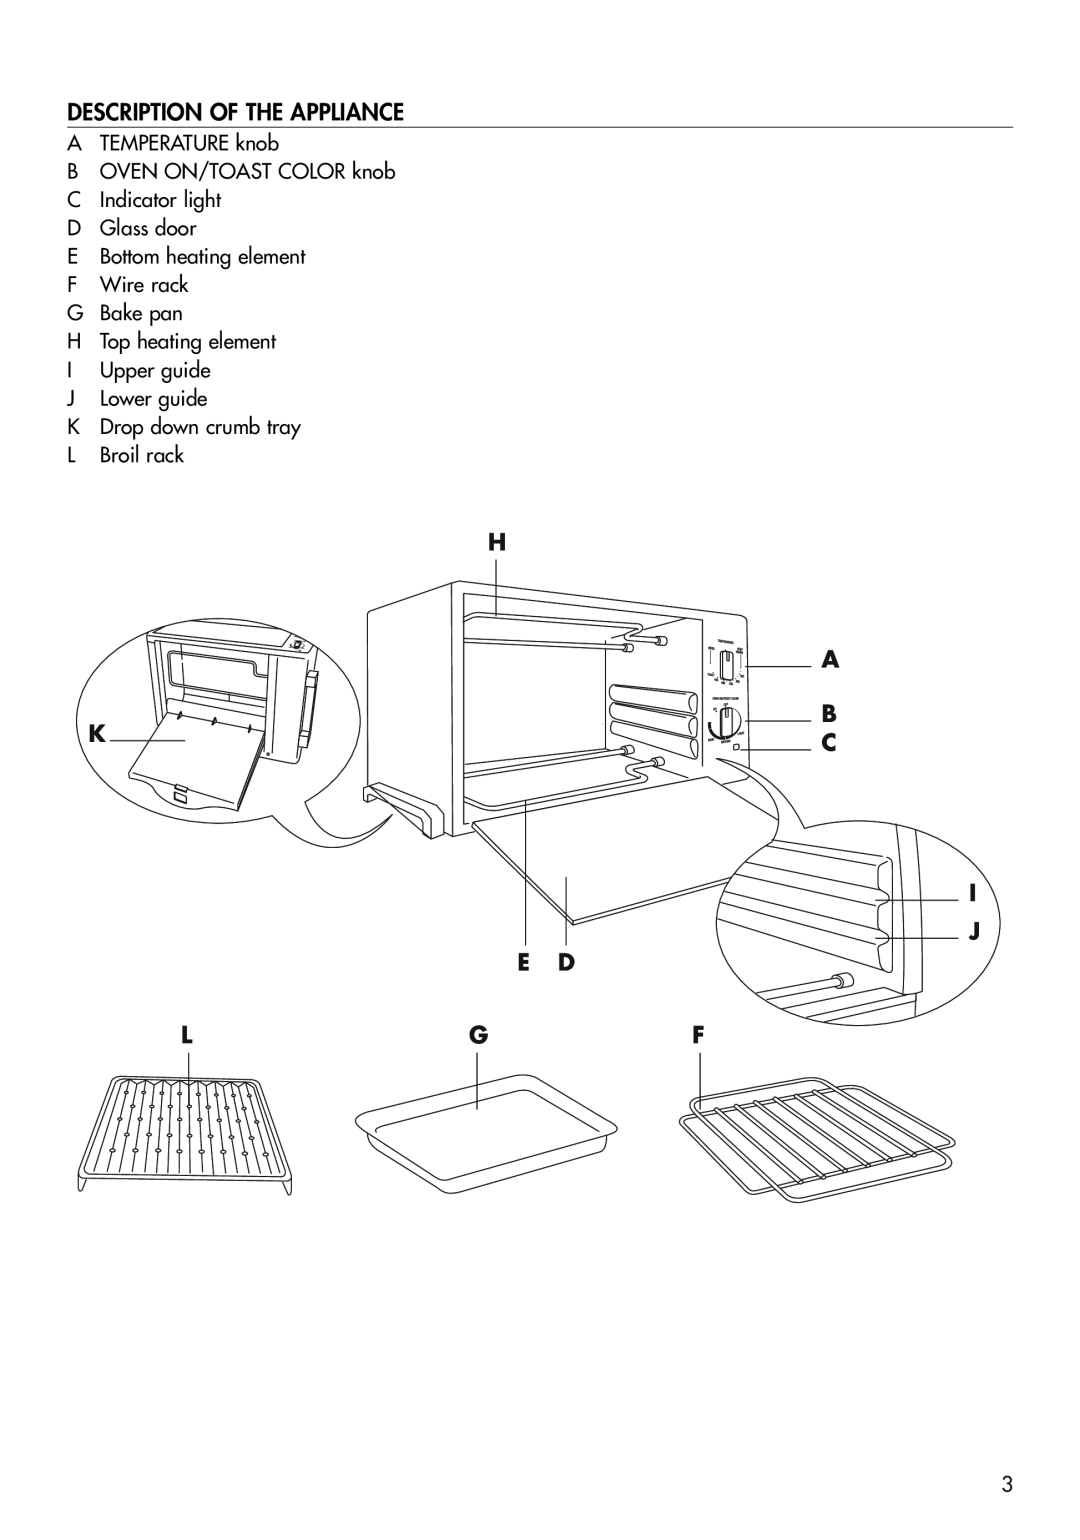 DeLonghi EO420 manual Description Of The Appliance, H K E D Lgf, A B C I J 